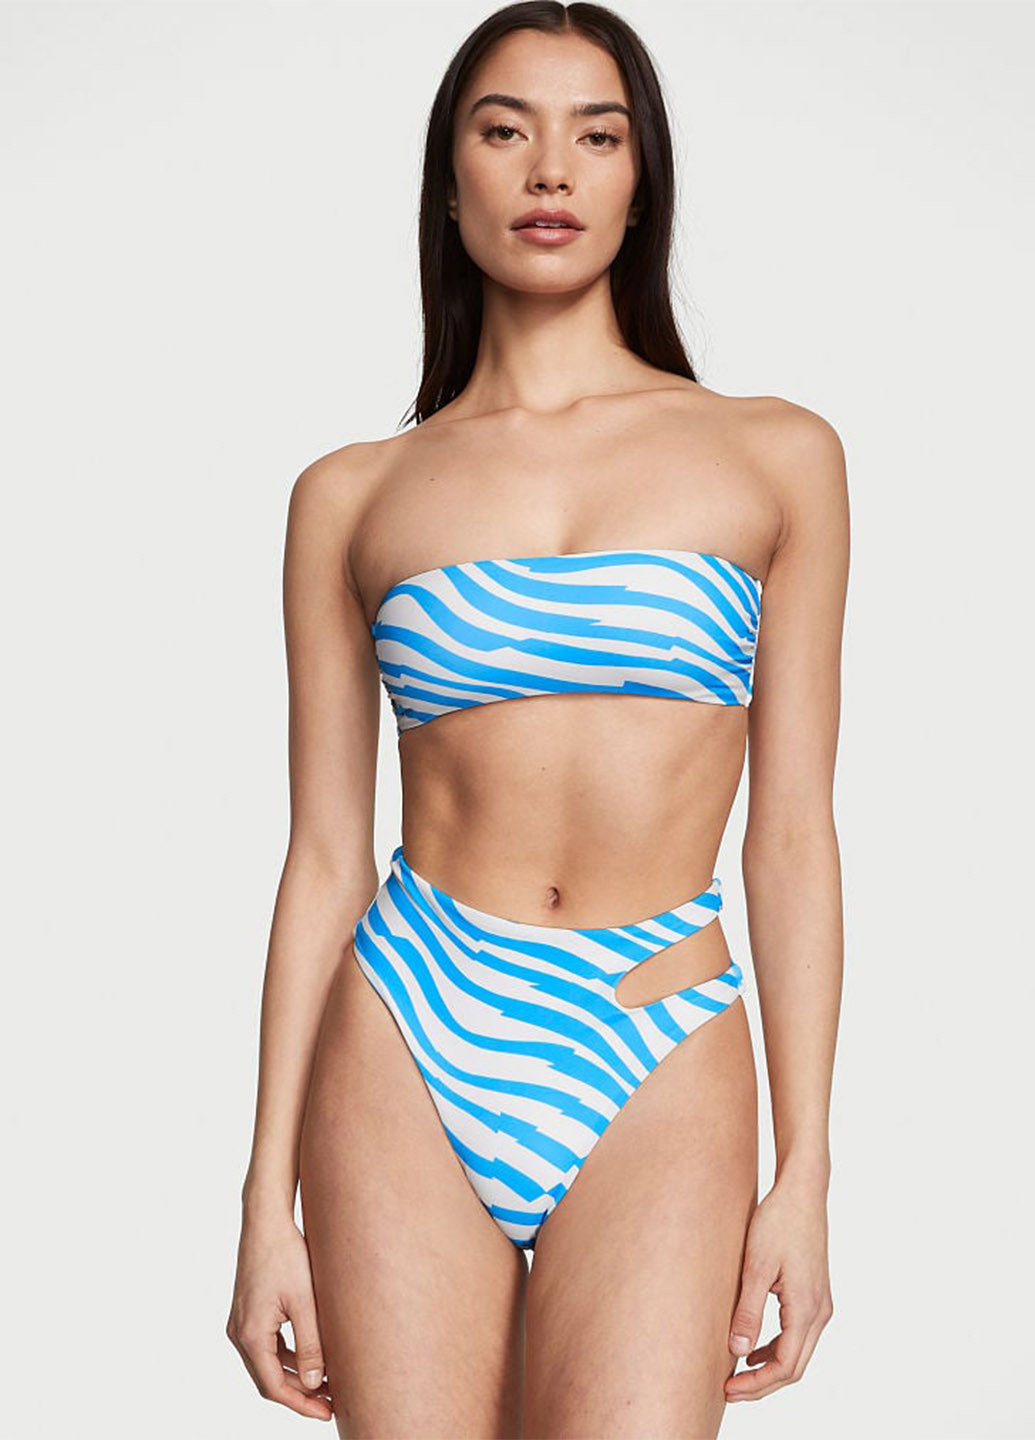 Блакитний літній купальник (ліф, труси) бандо, роздільний Victoria's Secret